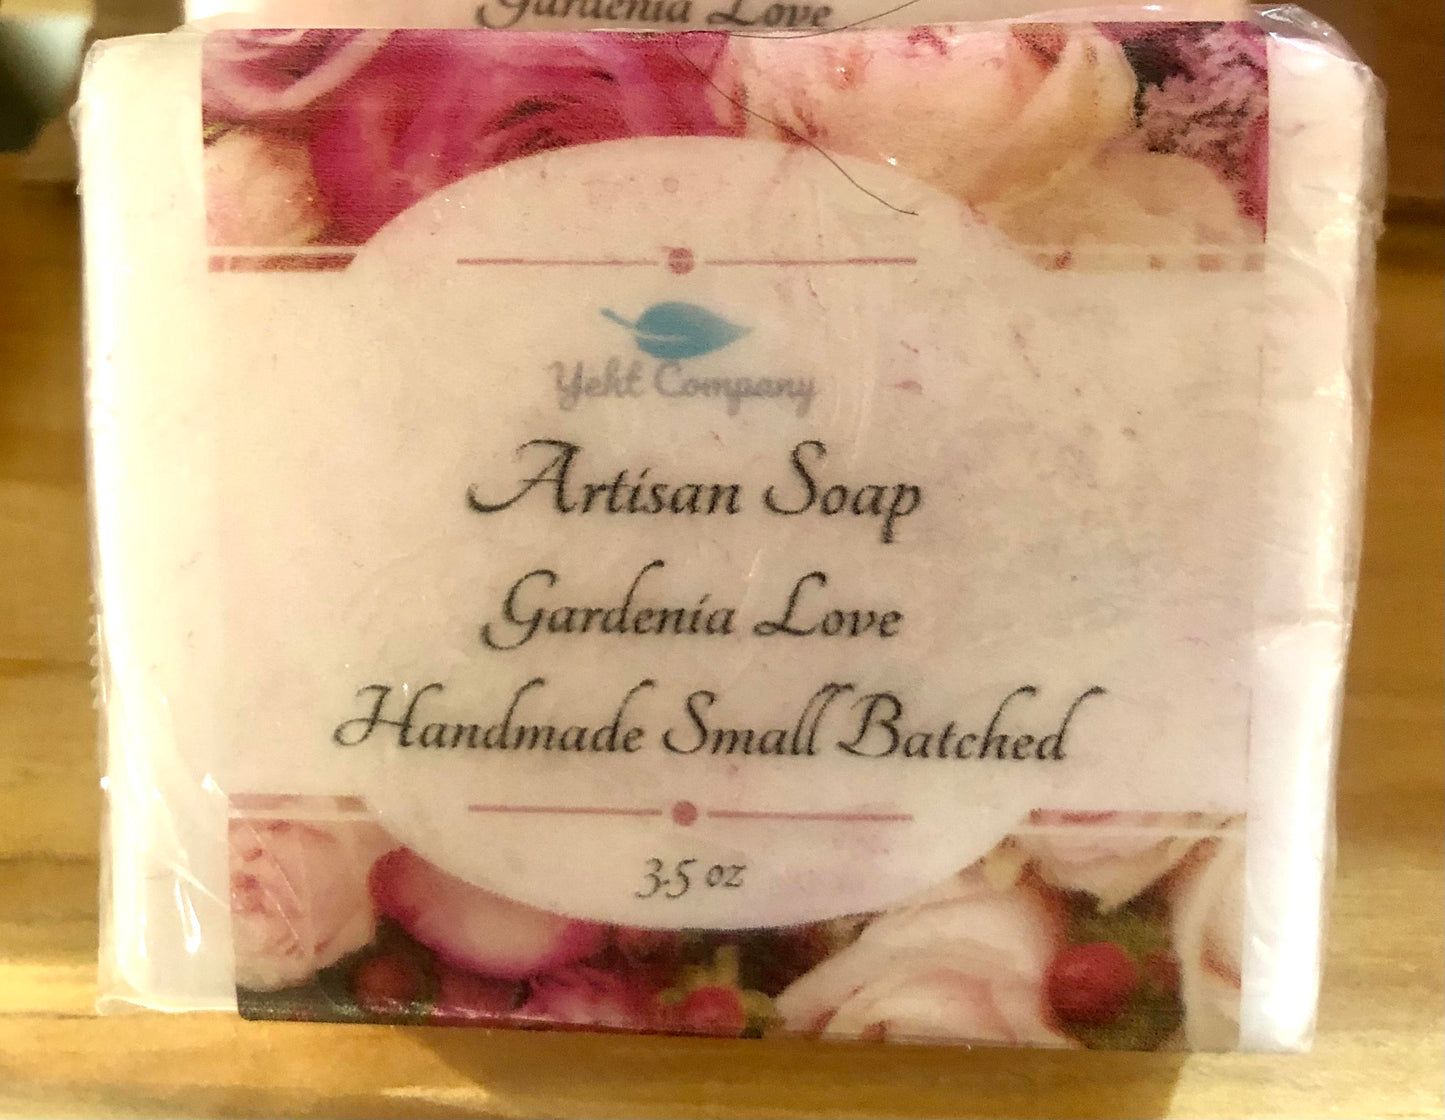 Gardenia Love Soap - YEHT CO.